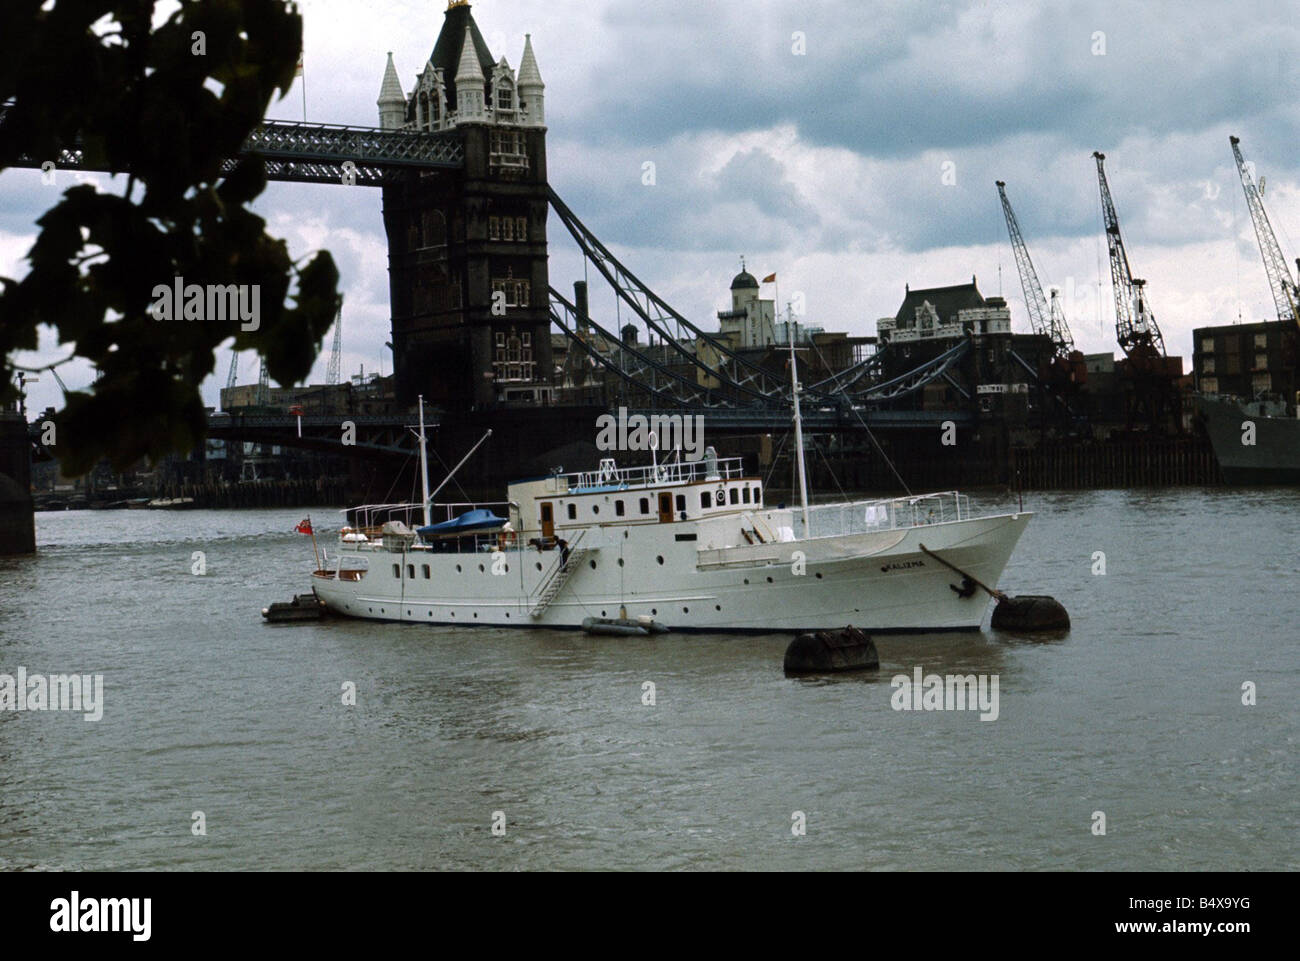 Location de Kalizma appartenant à Elizabeth Taylor est mouillée au large de la jetée de la Tour de Londres Voyage Kalizma navires disponibles Août 1968 Brad Pitt Banque D'Images